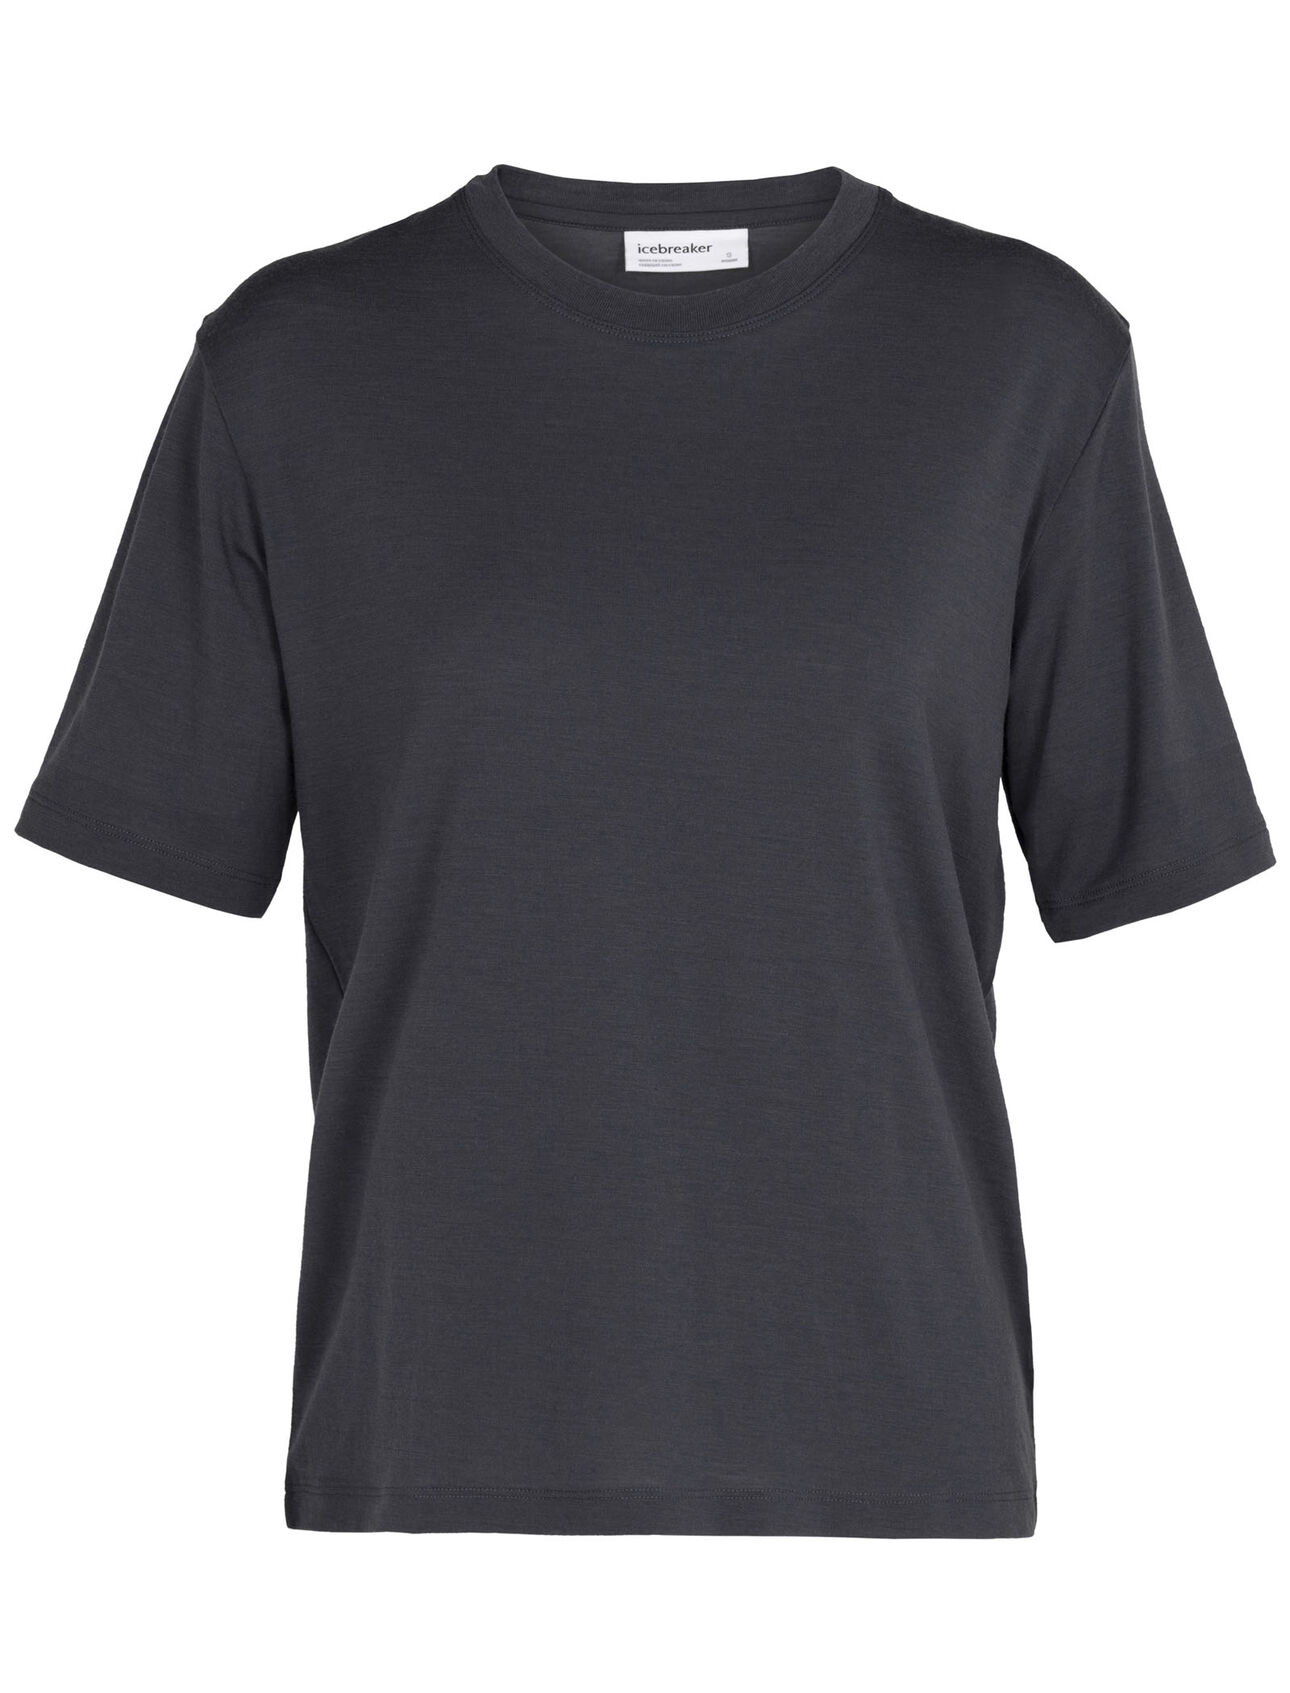 T-shirt in lana merino 150 Short Sleeve Crewe